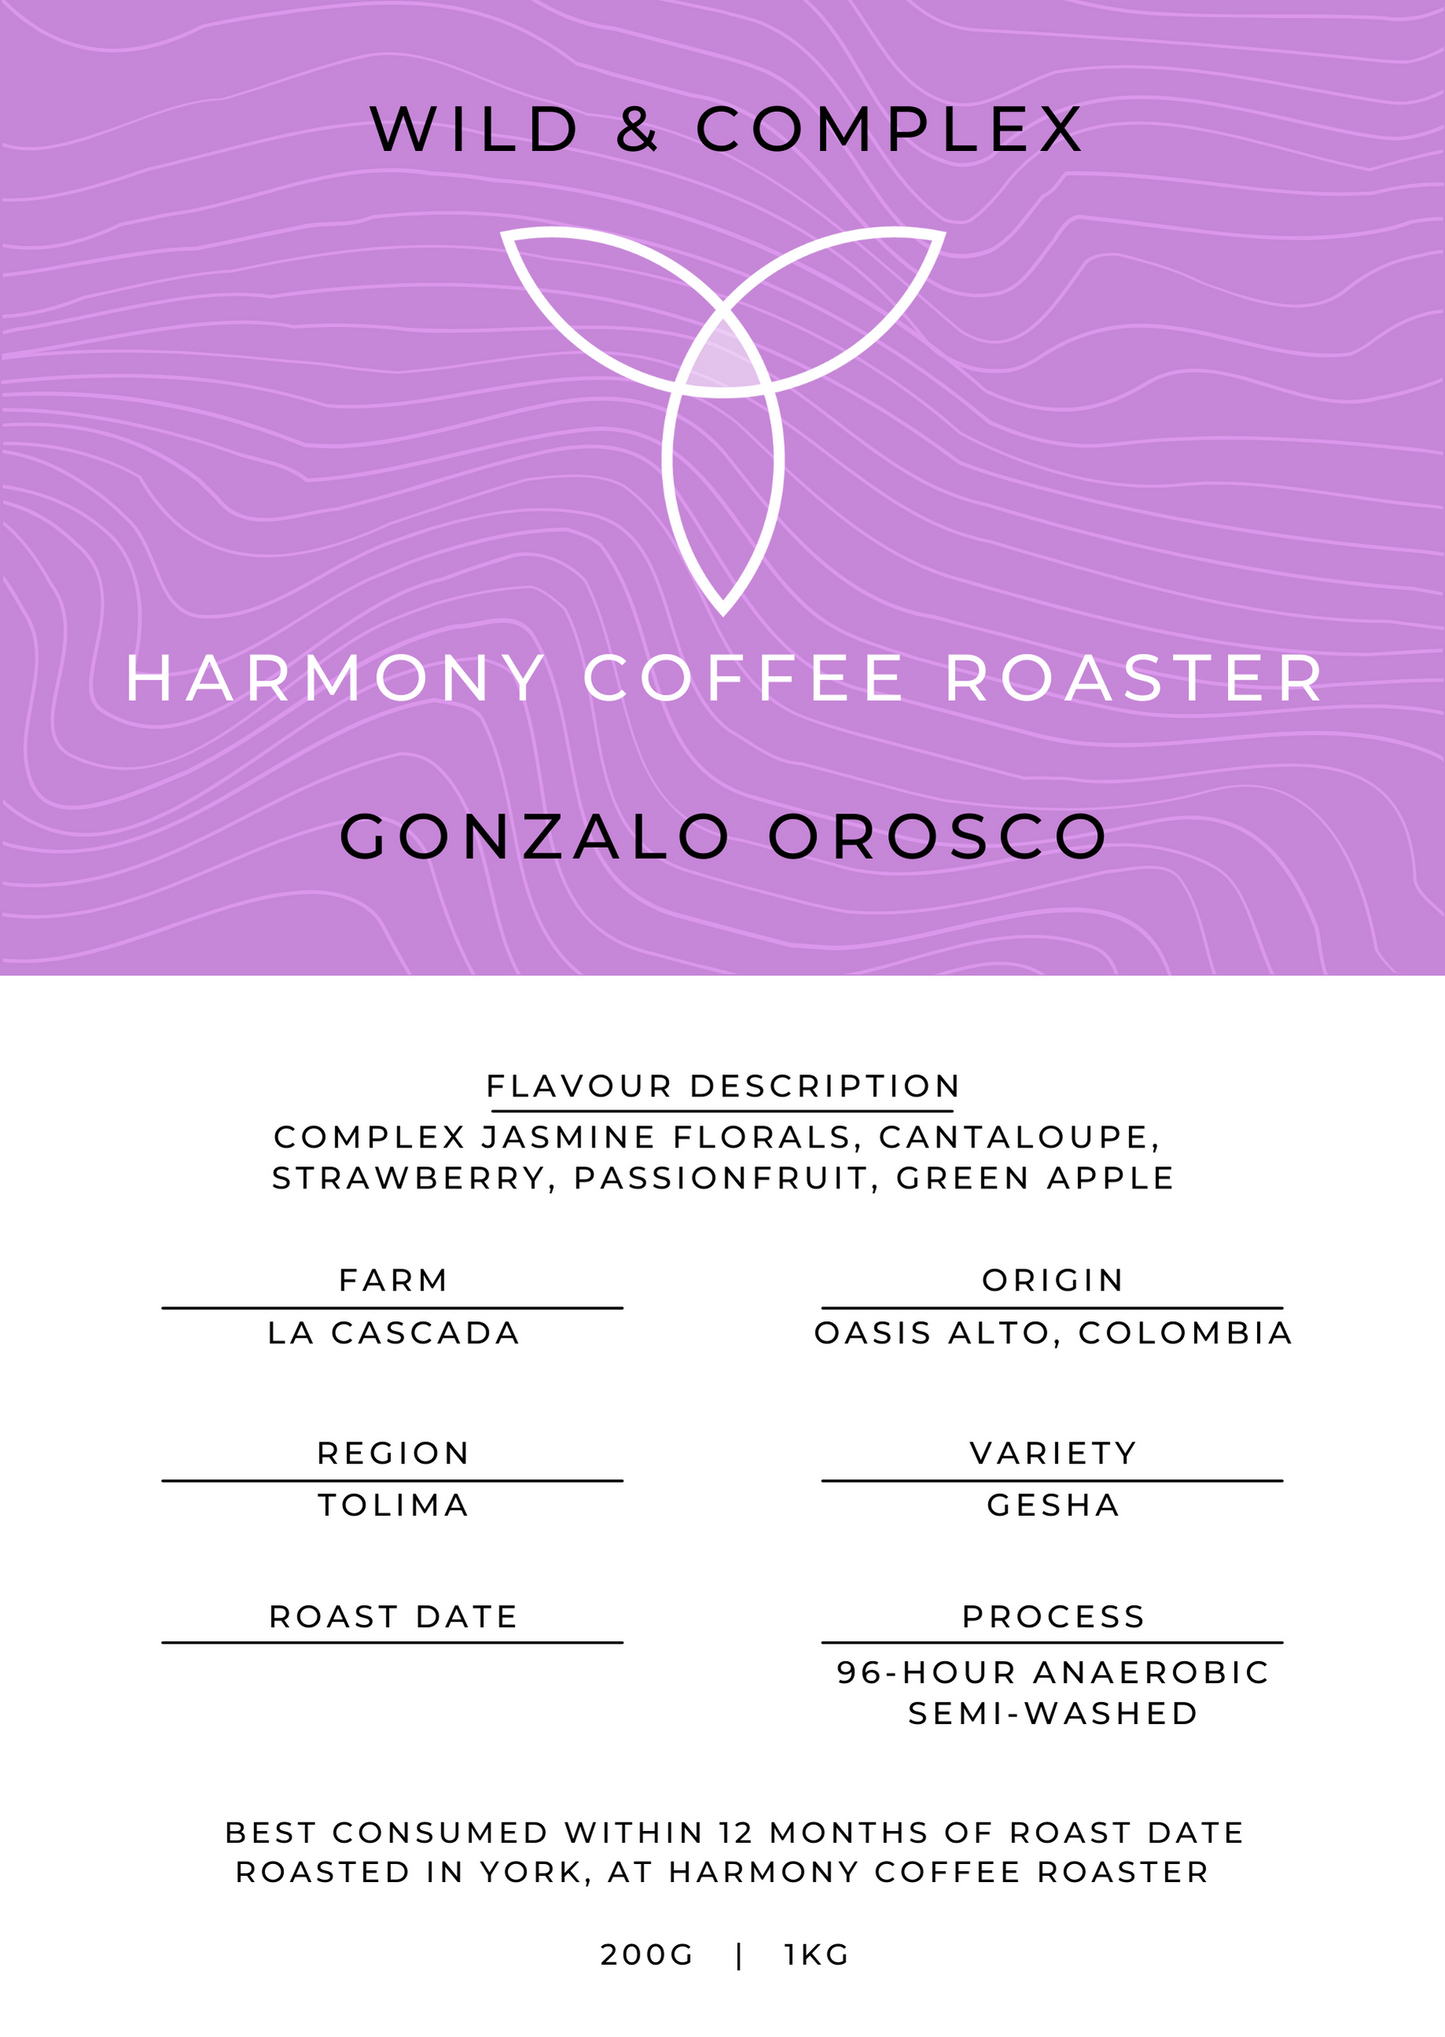 GONZALO OROSCO (Next Roast 29th Nov)